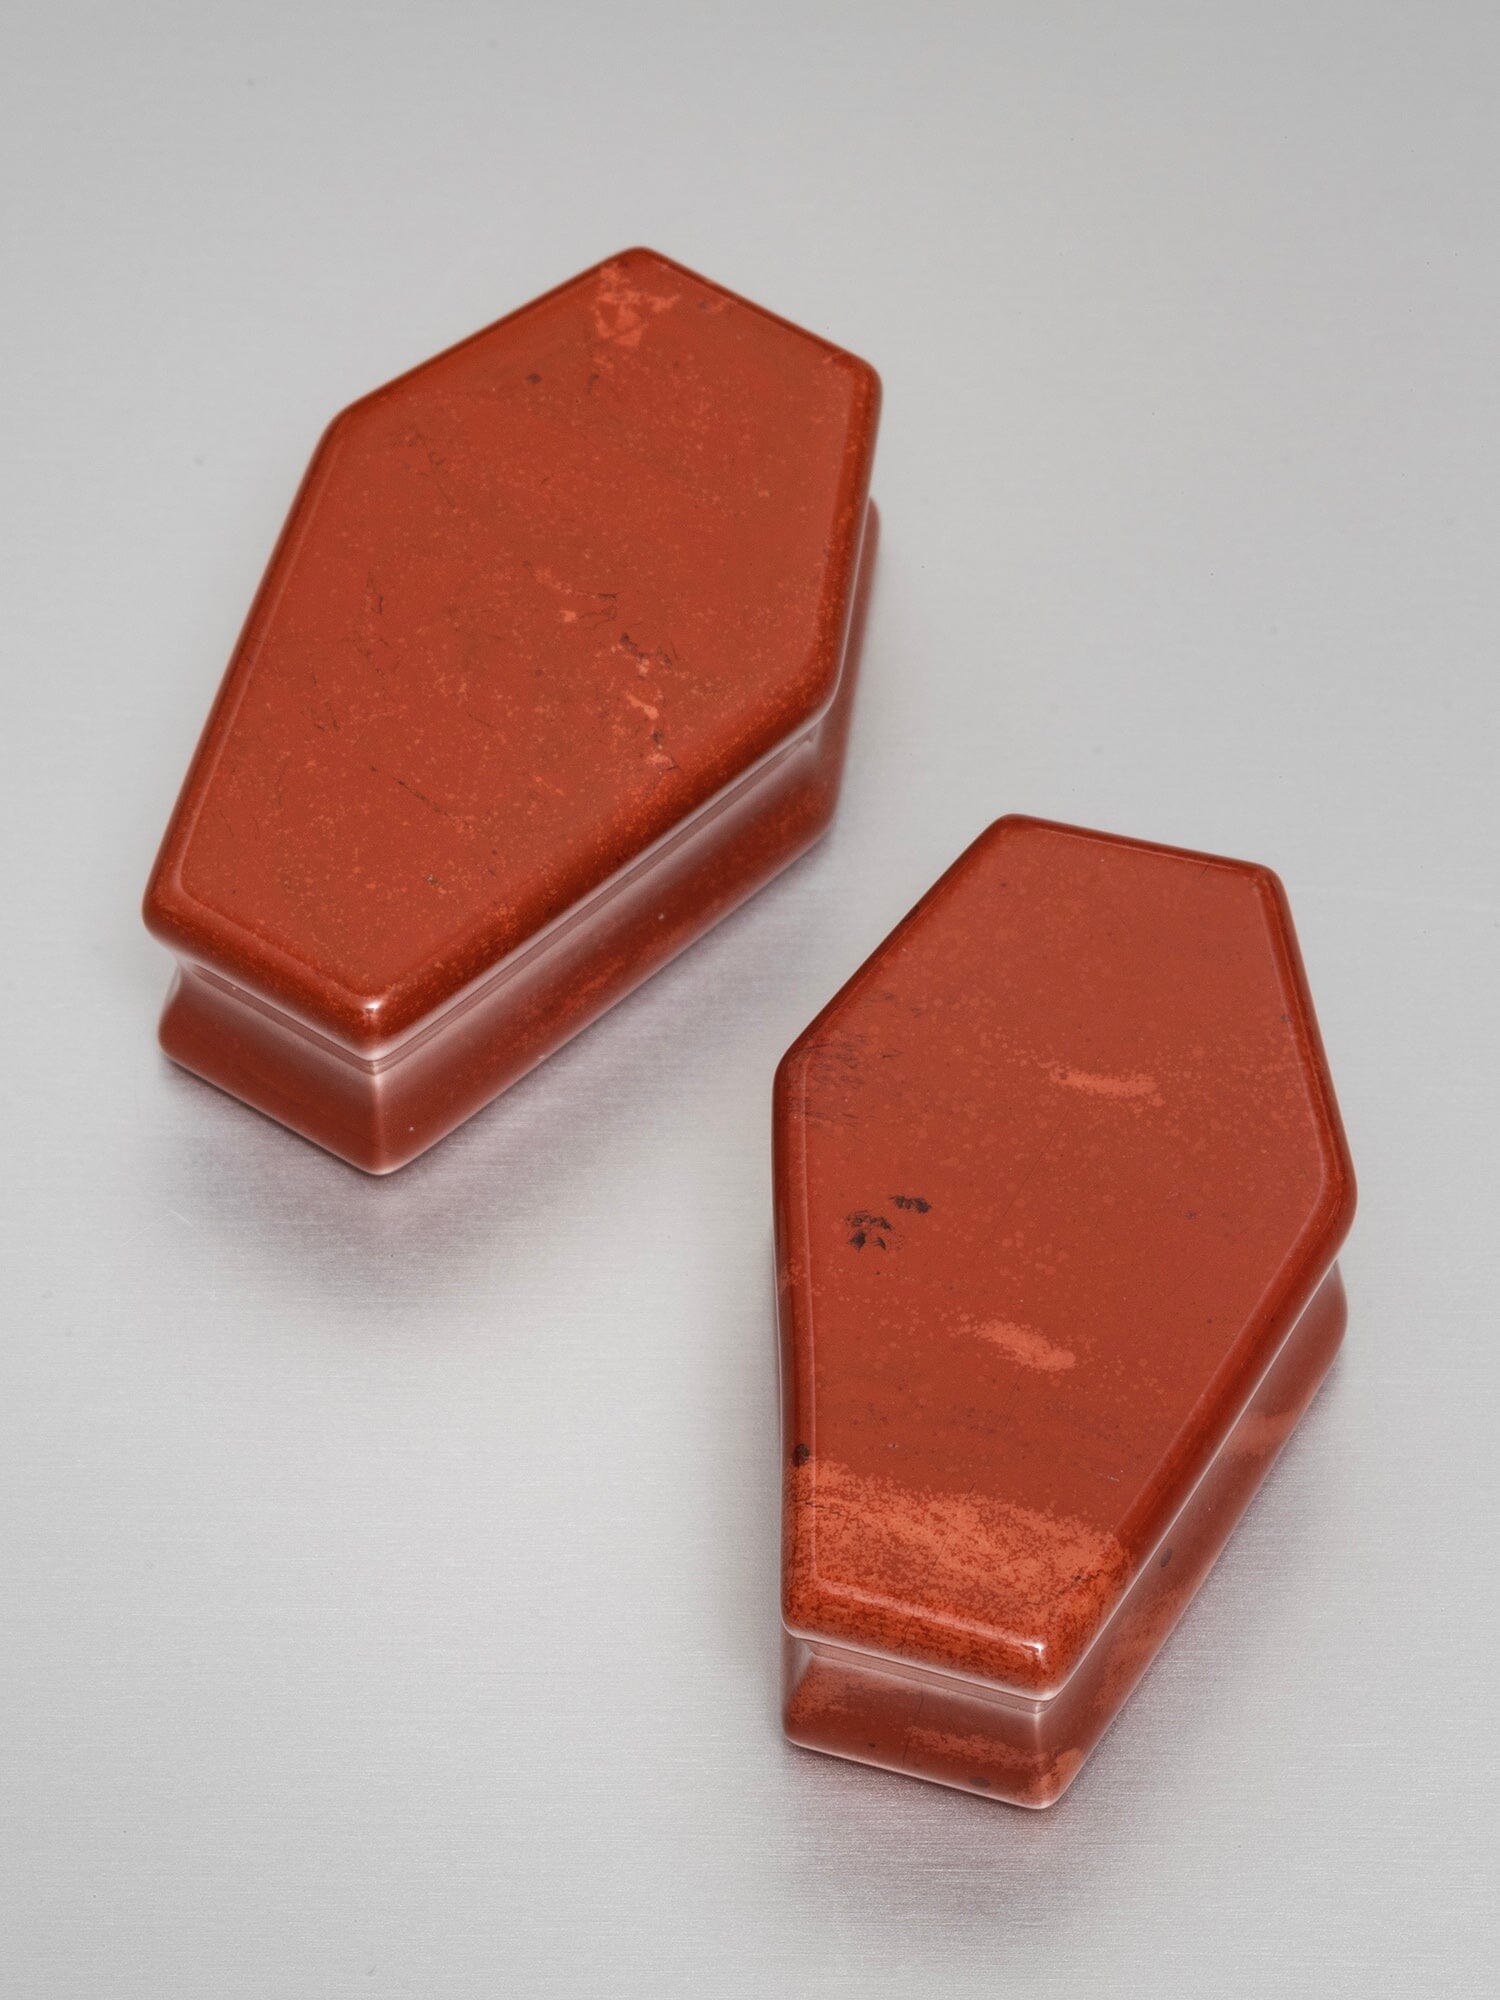 Red Jasper Coffin Cut Stone Plugs